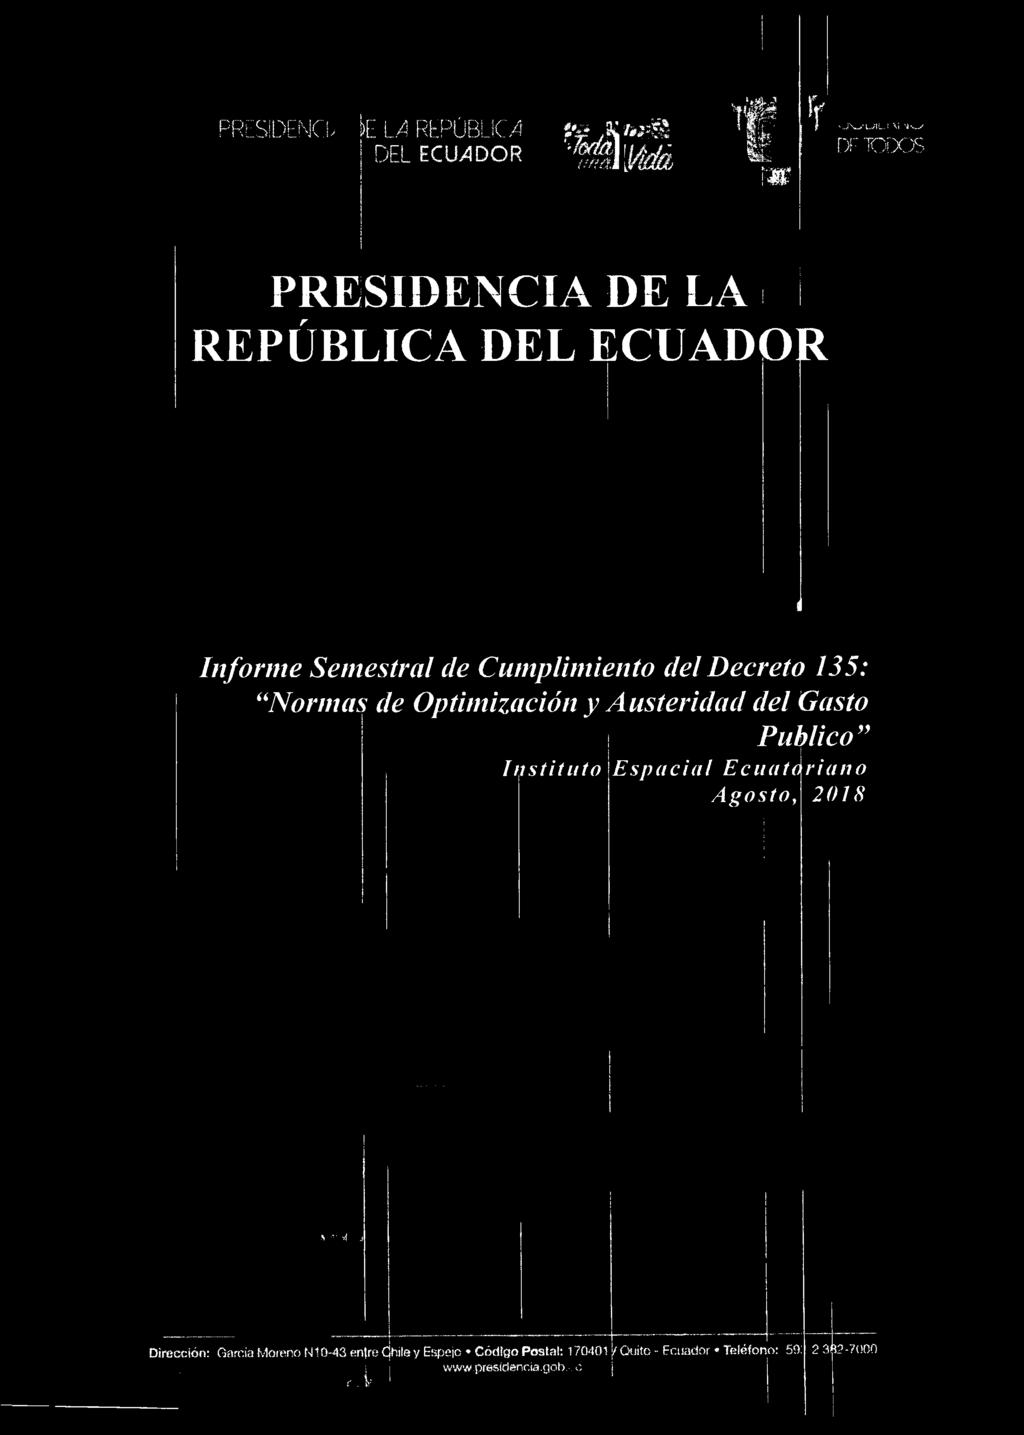 Cumplimiento del Decreto 135: Normas de Optimización y A usteridad del Gasto Publico Instituto Espacia/ Ecuatoriano